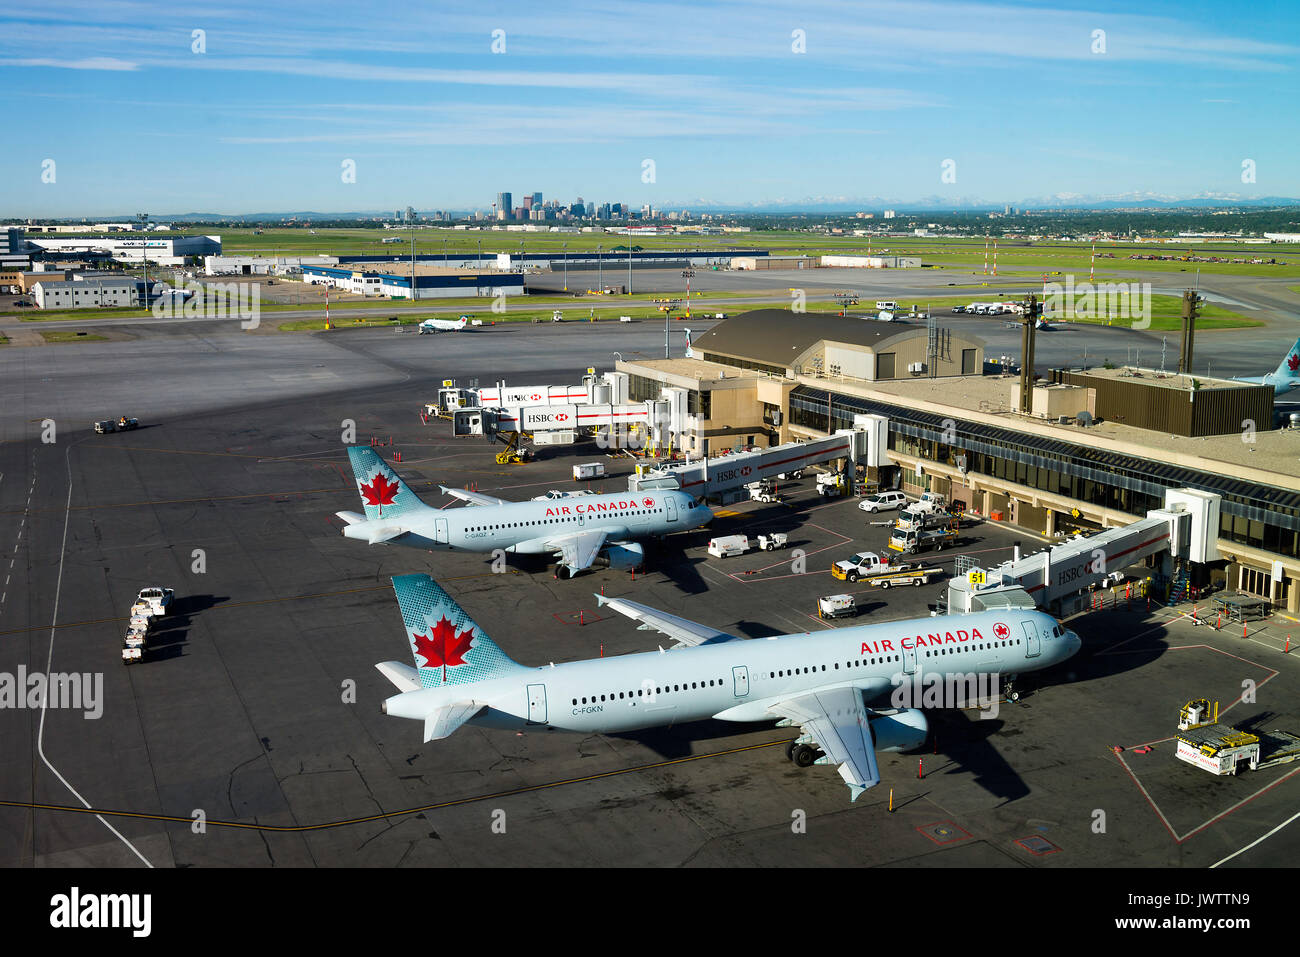 Air Canada Airline Airbus A 321-211 und 319-114 Verkehrsflugzeuge C-FGKN und C-GAQZ auf steht am internationalen Flughafen von Calgary Alberta Kanada Stockfoto